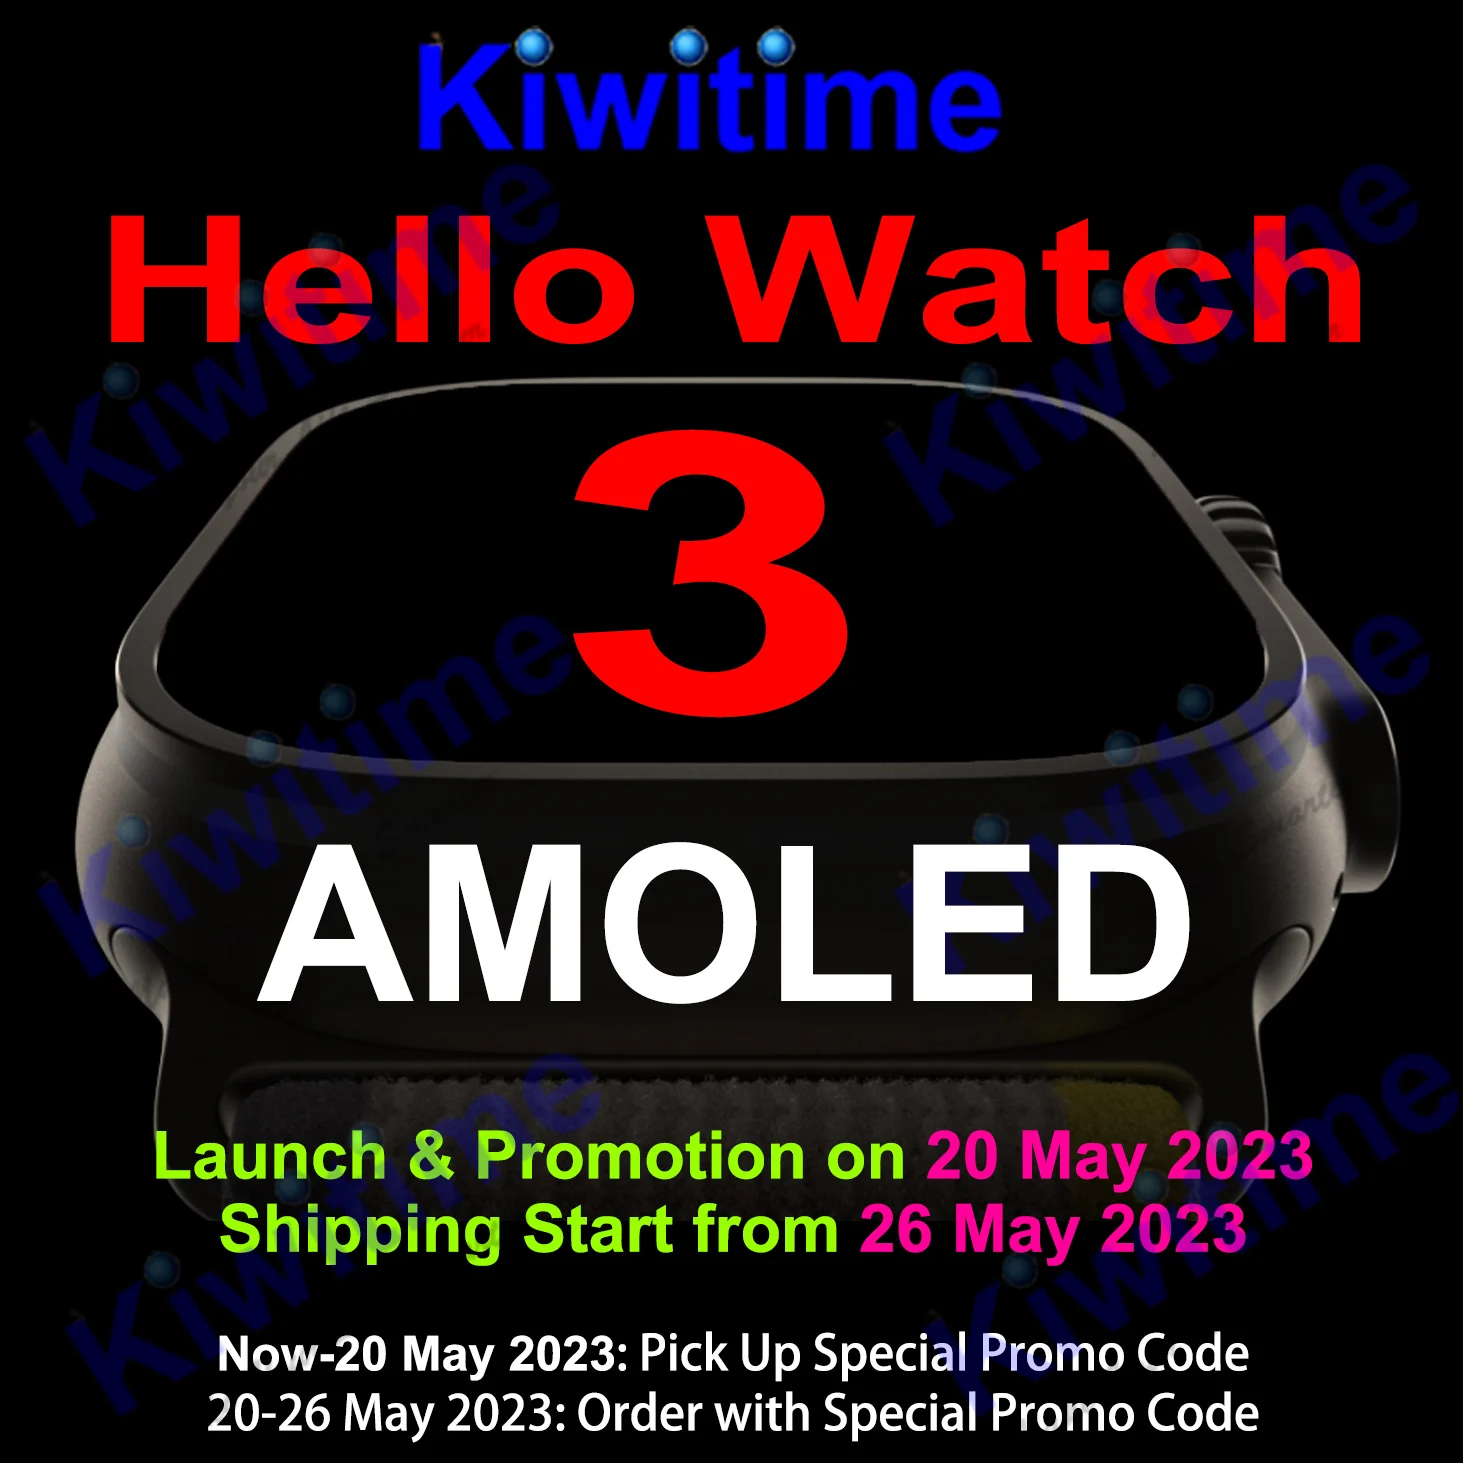 KIWITIME Hello Watch 3